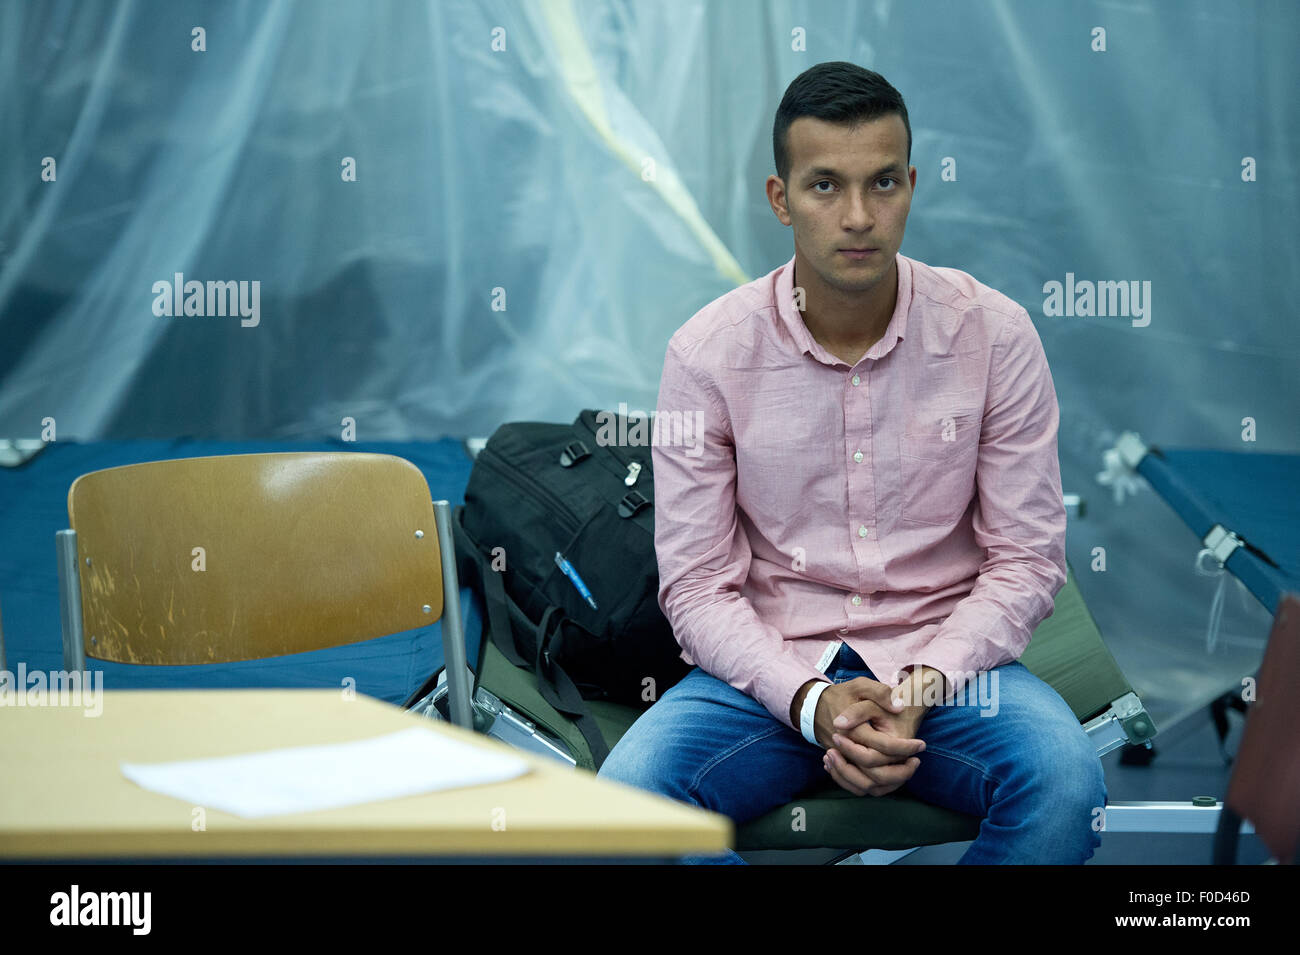 16-anni rifugiato Ali dall Afghanistan si siede in una improvvisata sala di interrogazione e attende il suo trasporto ad un alloggio per adolescenti rifugiati nella stazione della polizia federale presso la stazione centrale di Francoforte sul Meno, Germania, 05 agosto 2015. Foto: BORIS ROESSLER/dpa Foto Stock